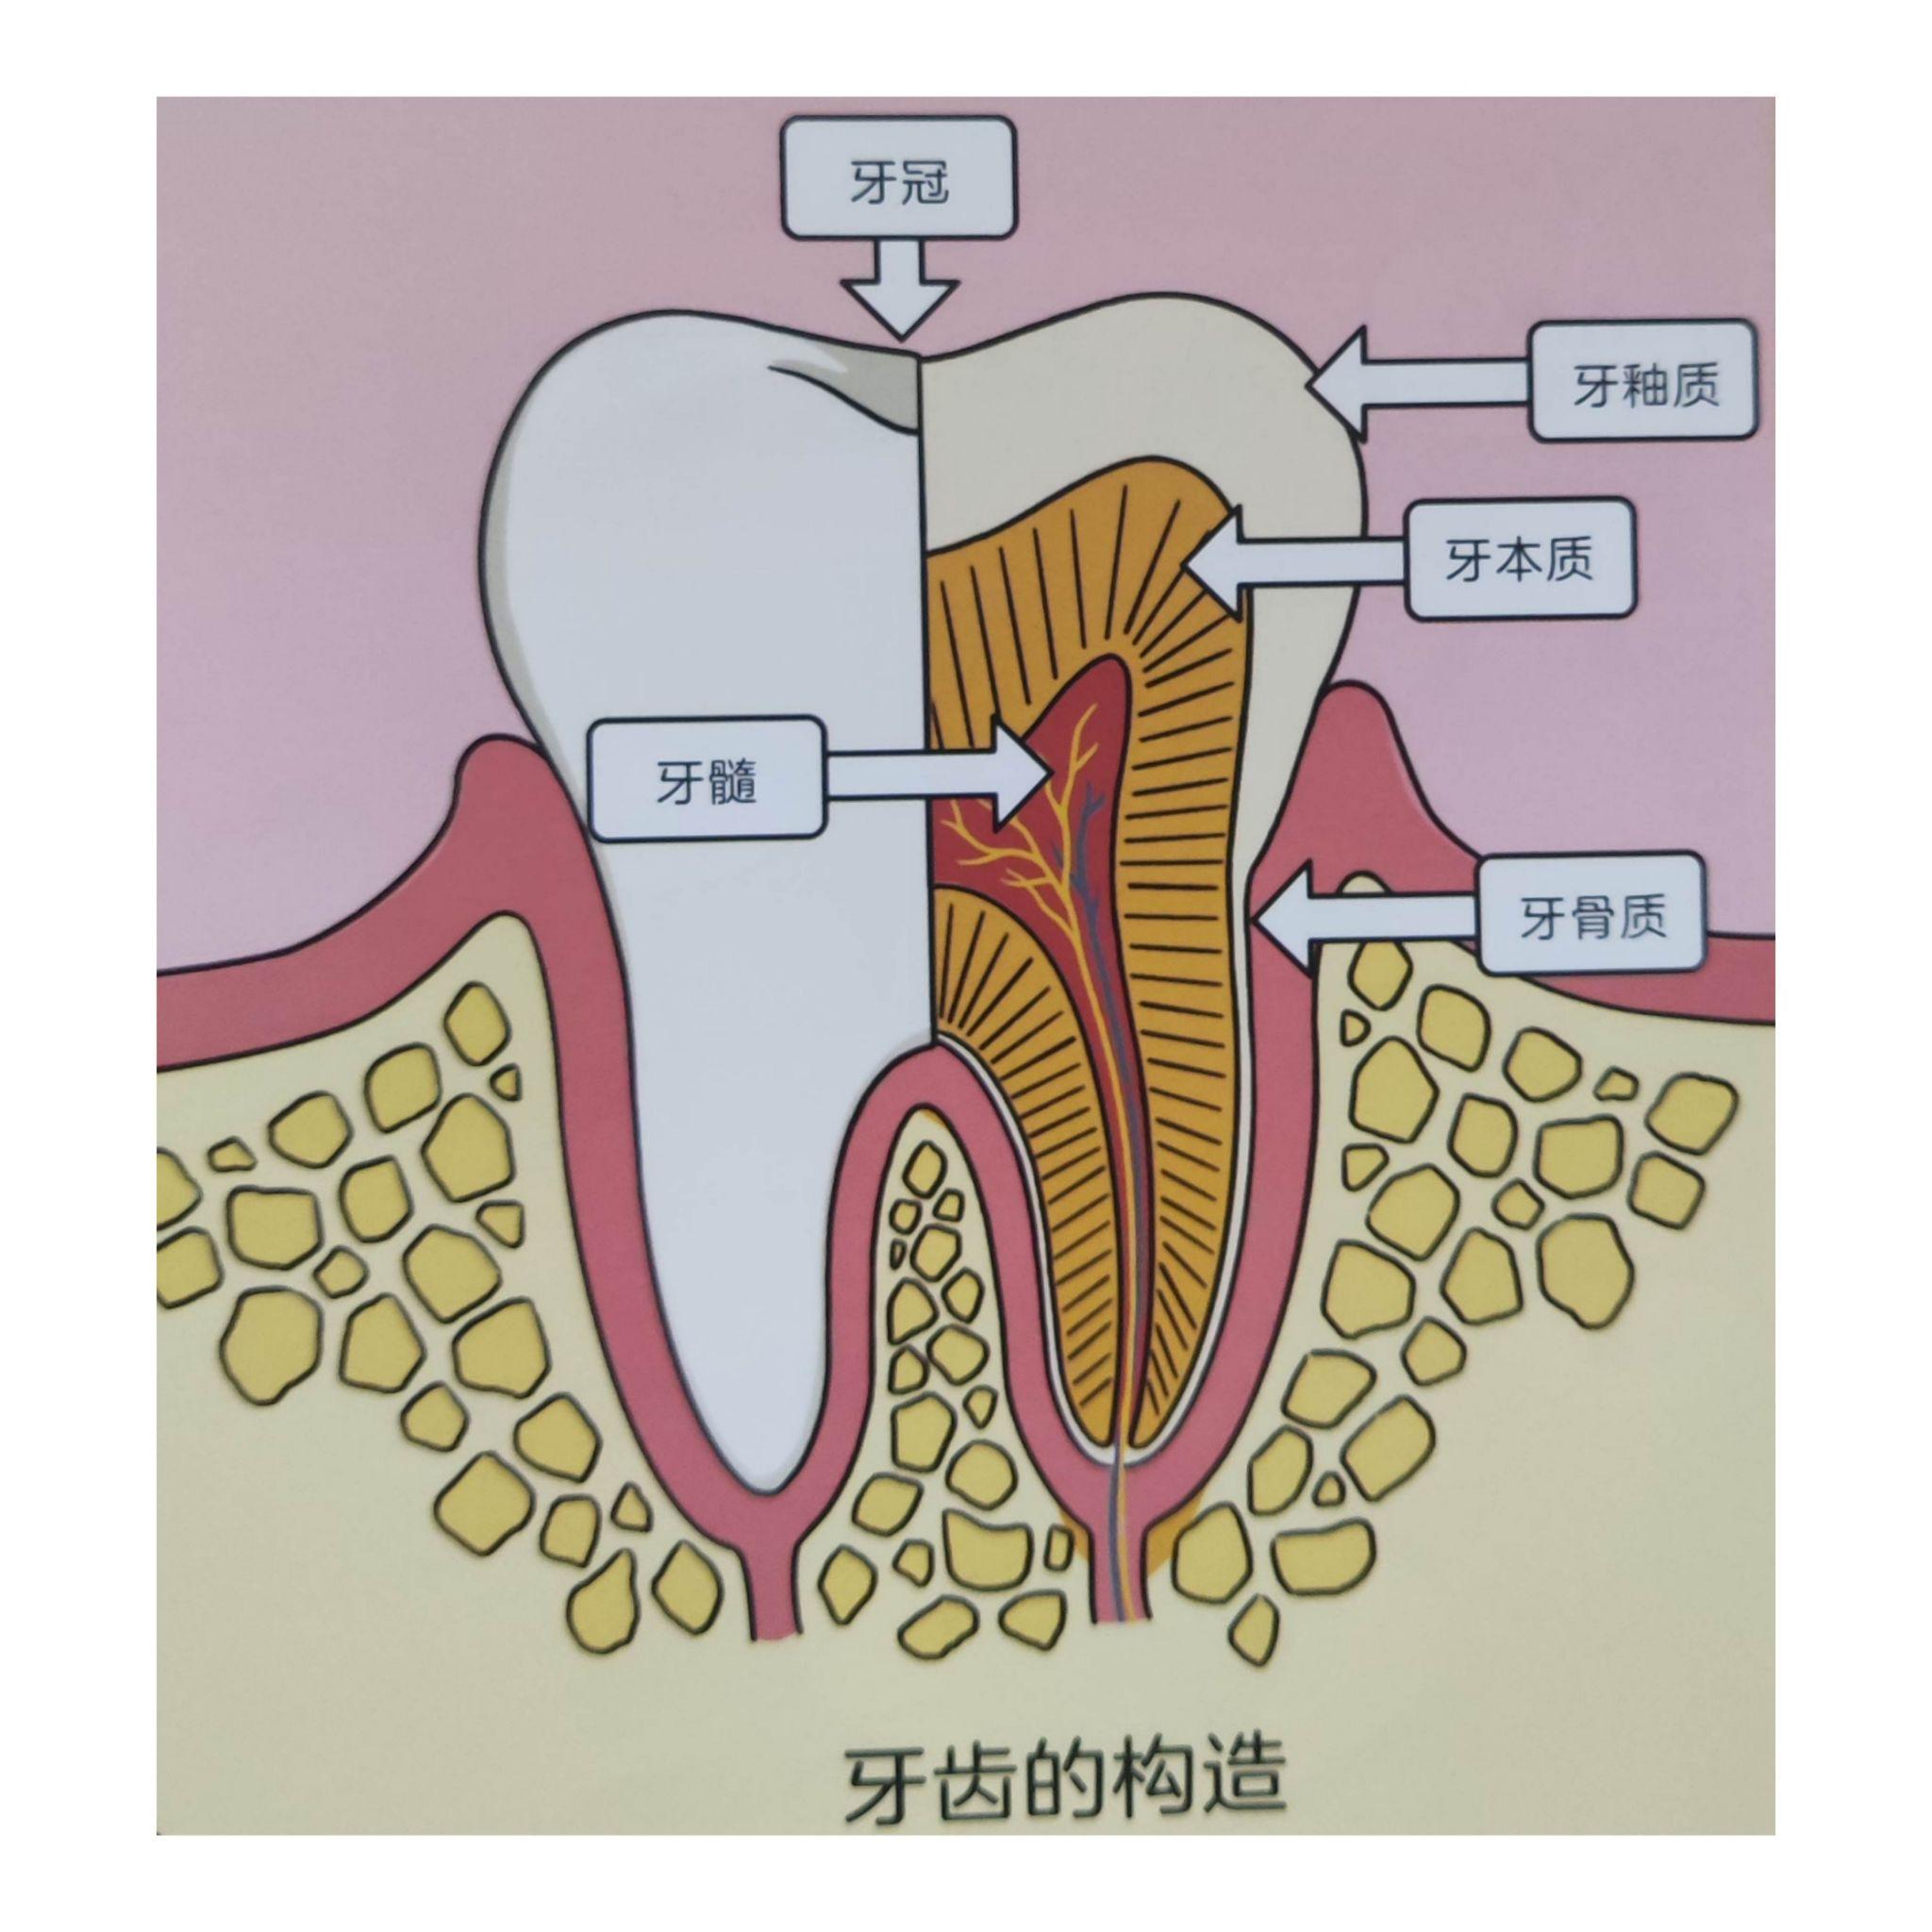 儿童牙齿生长可以分为萌芽期,乳牙期,换牙期和恒牙期这4个主要阶段.